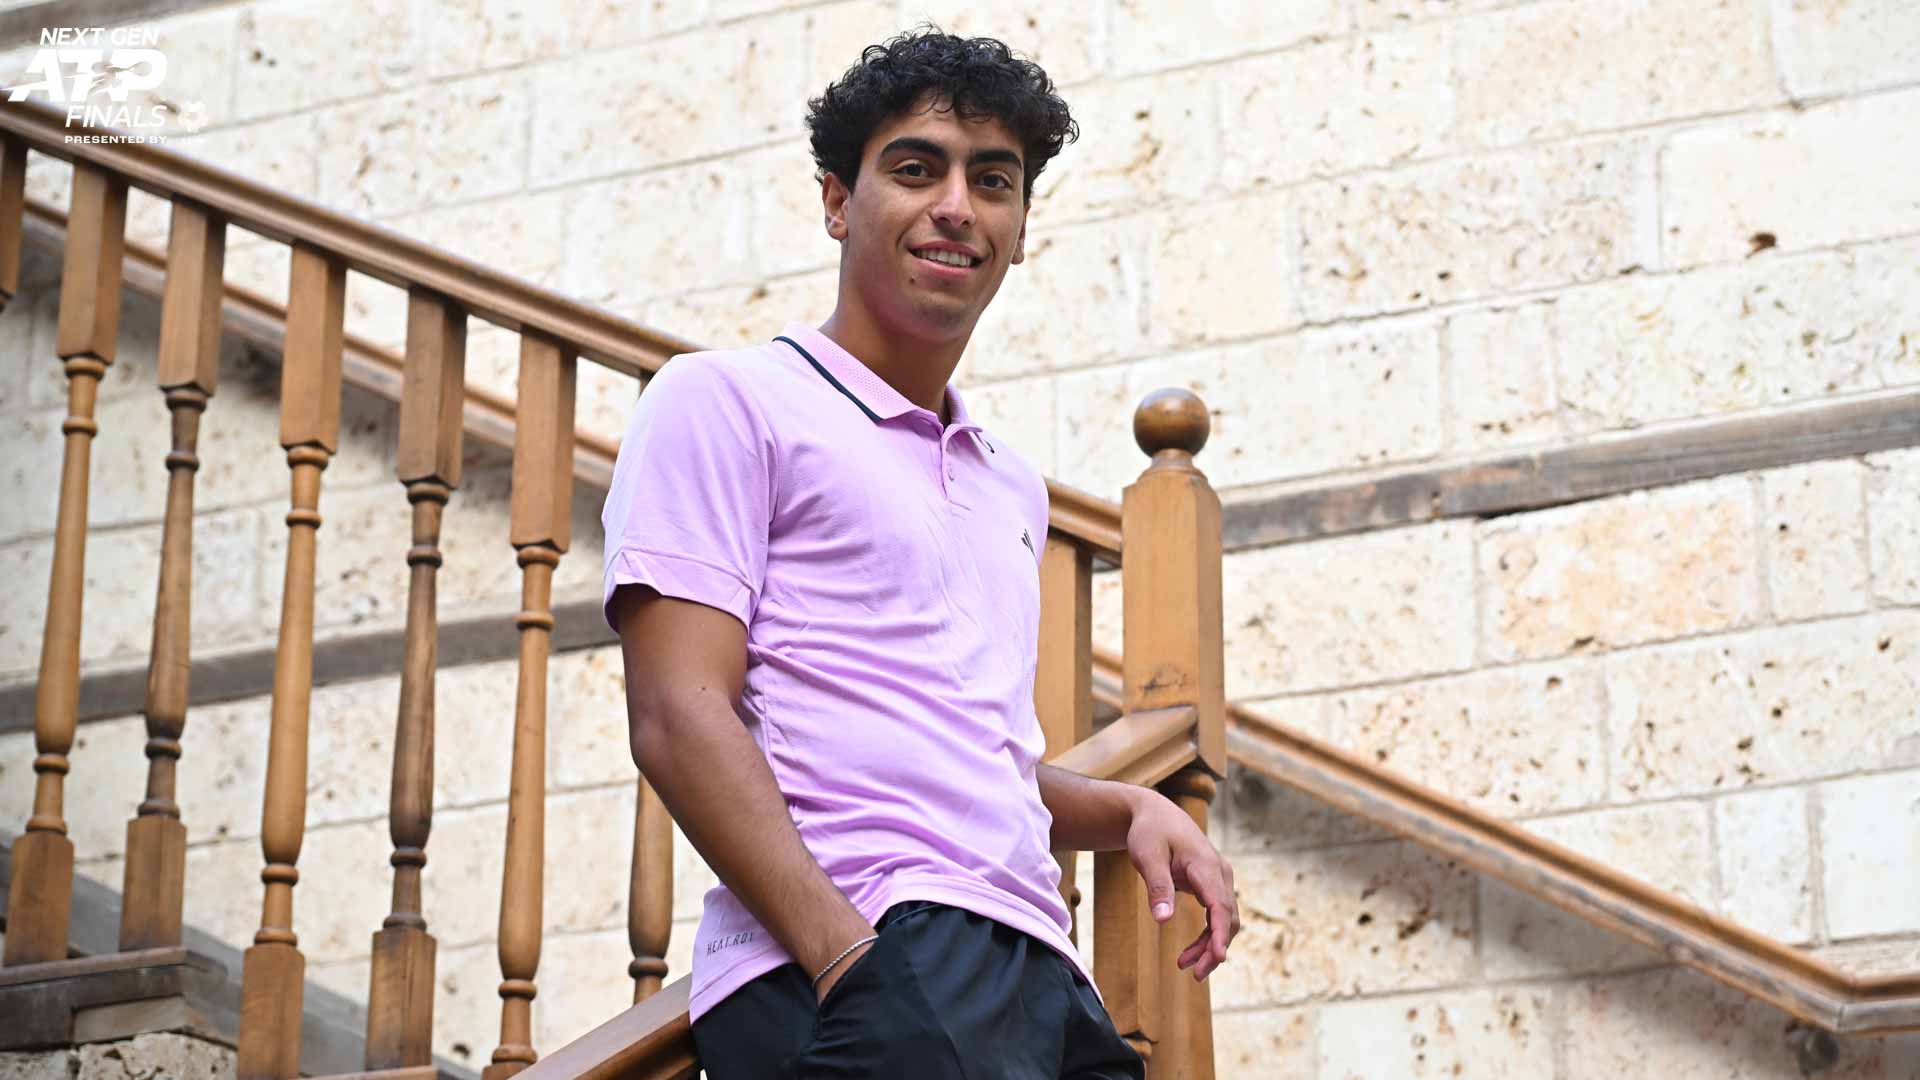 نهائيات الجيل القادم لرابطة محترفي التنس ومشاركة الشاب الأردني عبدالله شلباية البالغ من العمر 20 عاماً في جدة